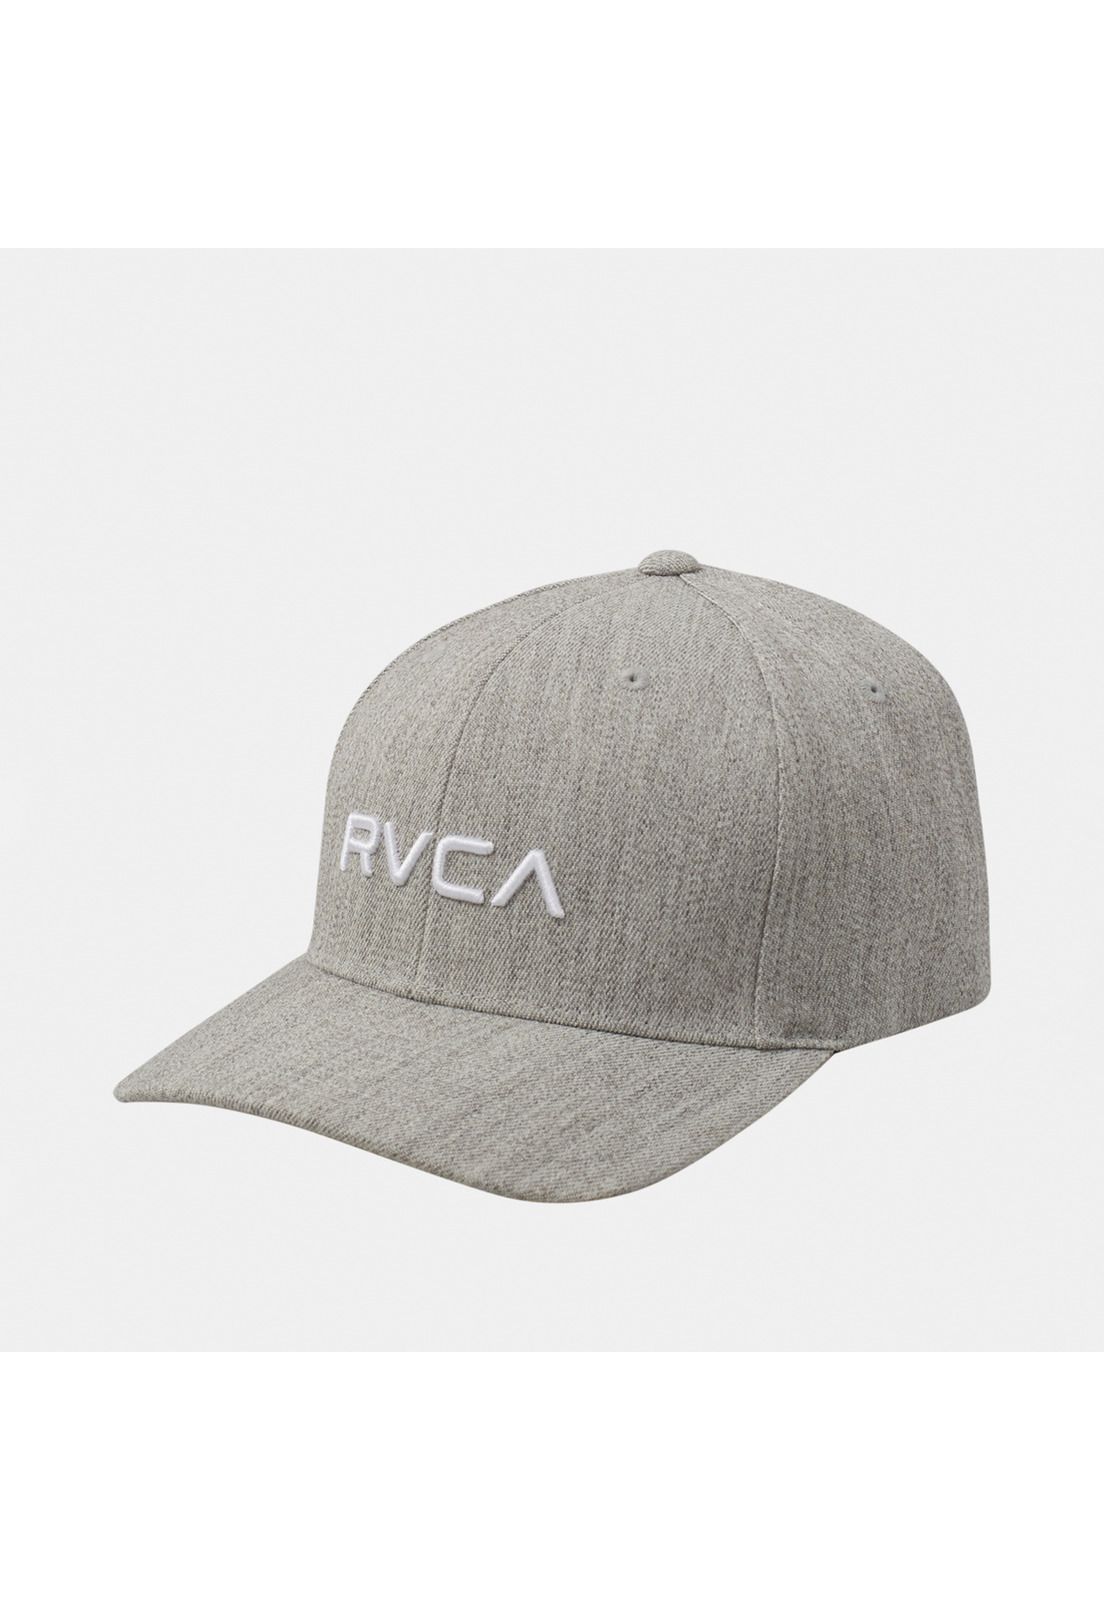 Jockey Hombre Rvca Flex Fit M Hats